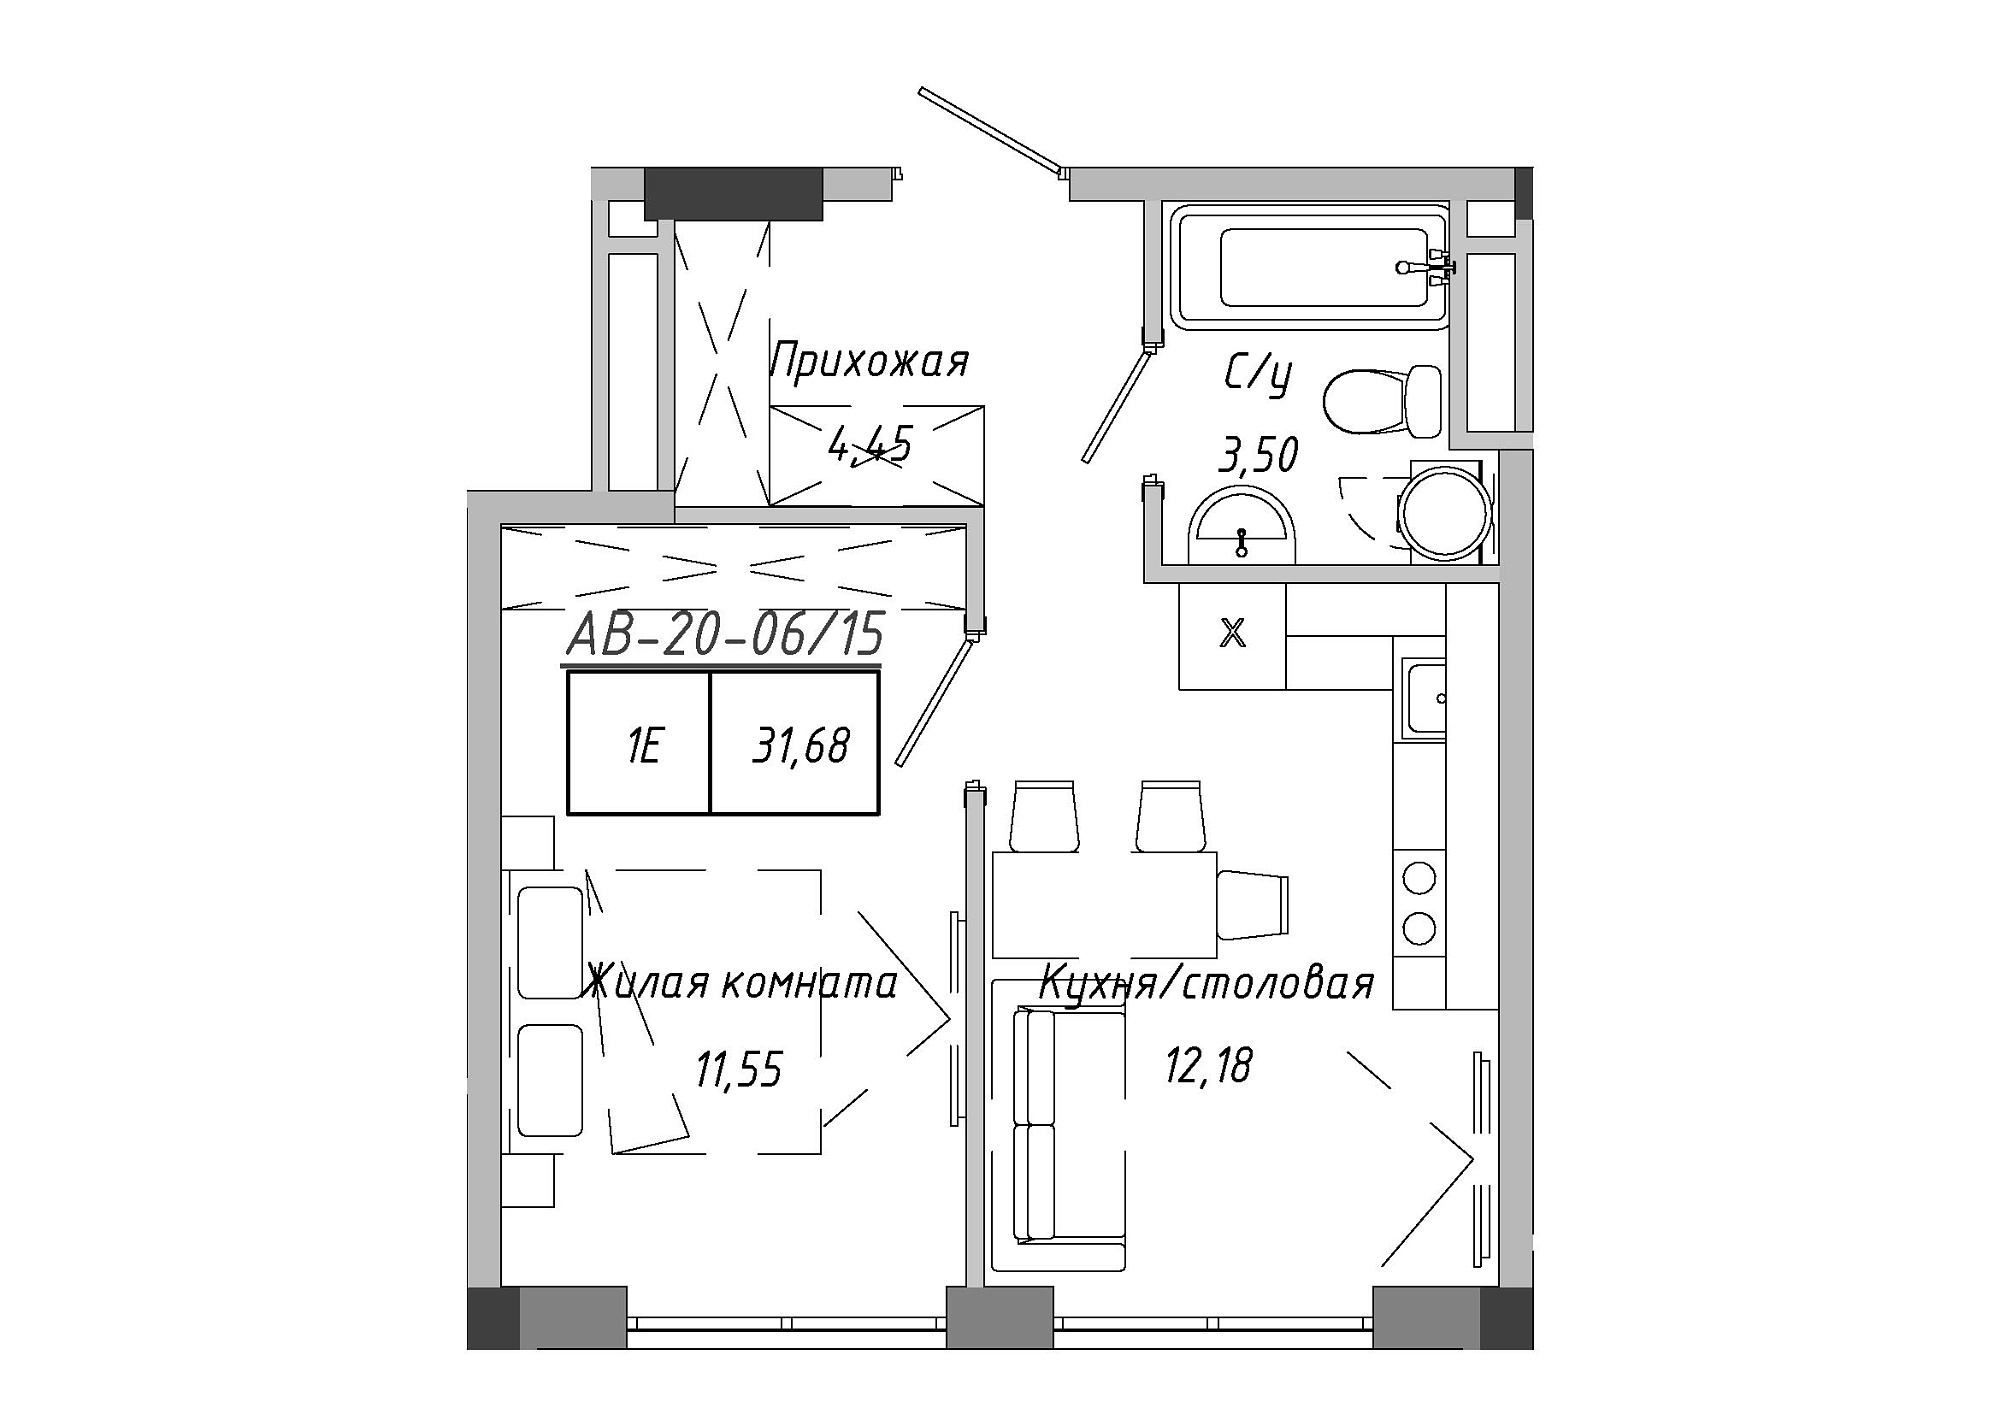 Планировка 1-к квартира площей 31.51м2, AB-20-06/00015.